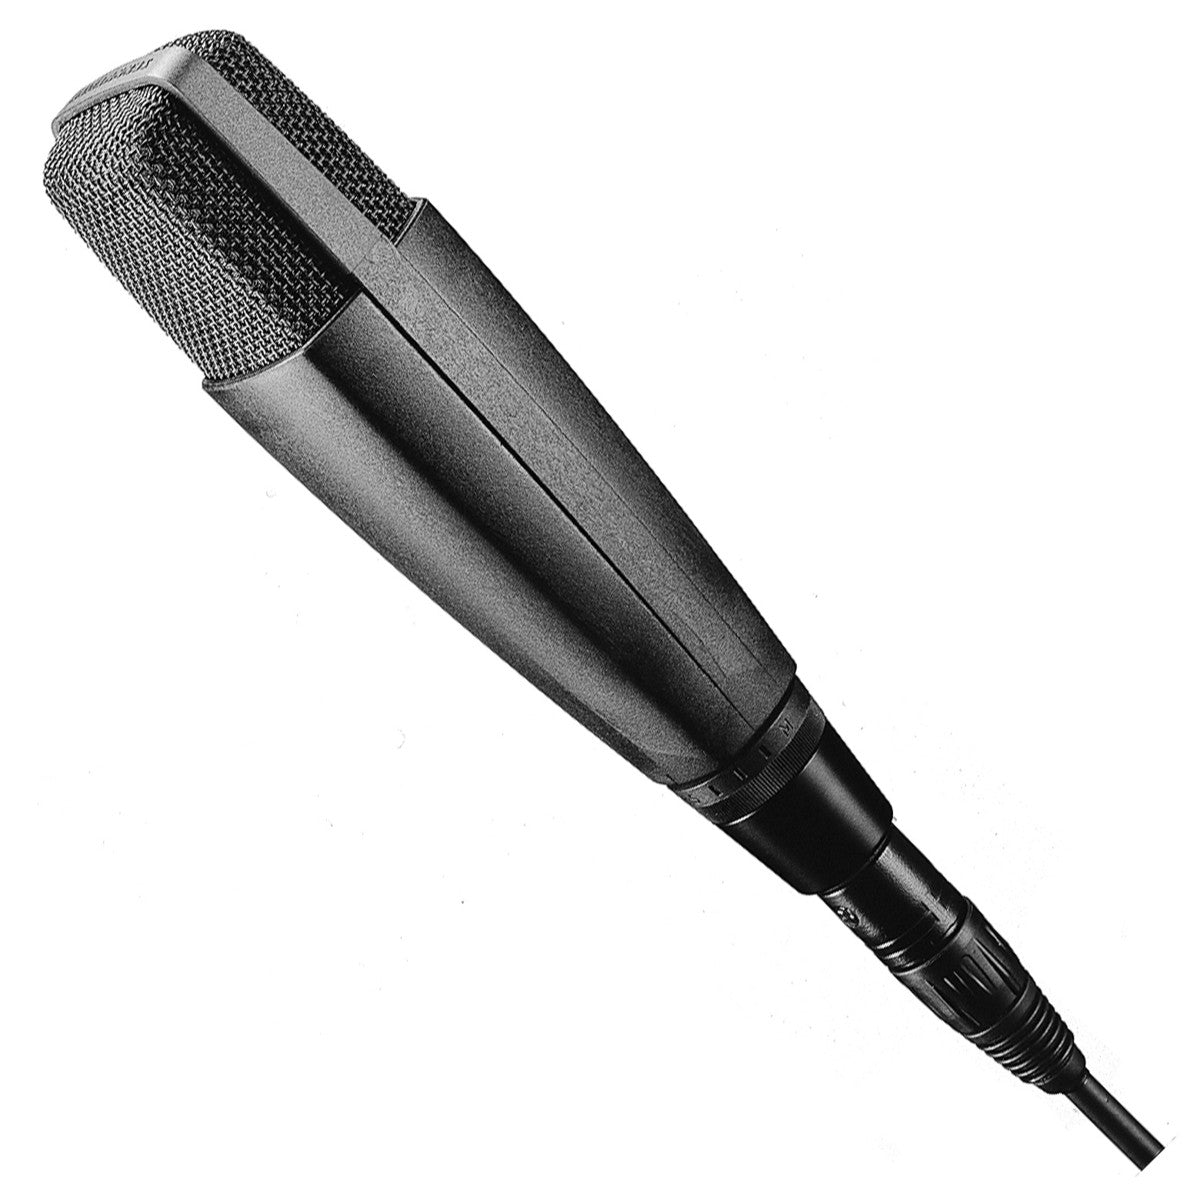 Sennheiser MD421-II Broadcast Dynamic Microphone